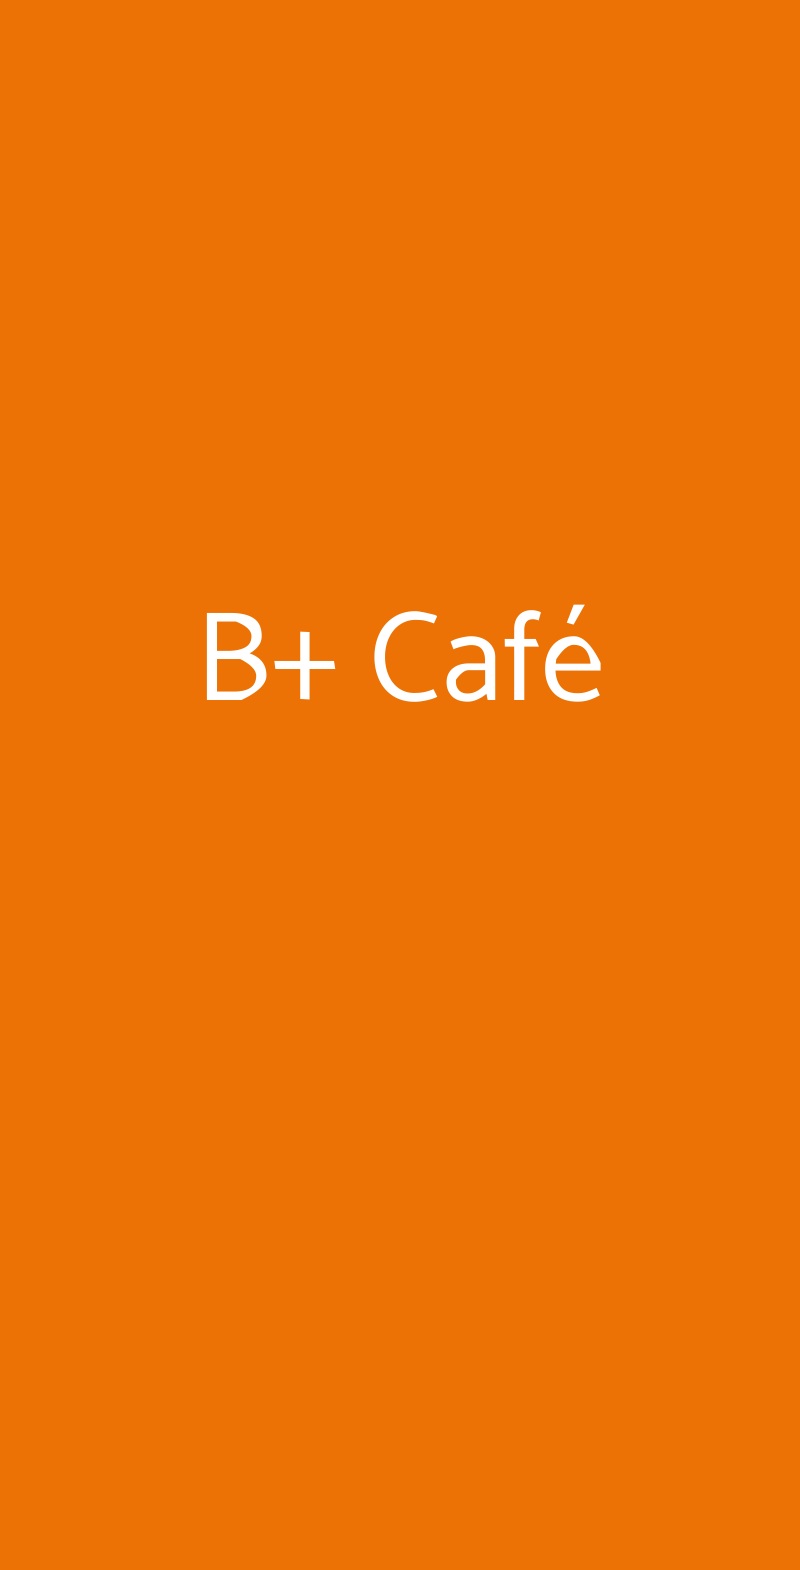 B+ Café Zola Predosa menù 1 pagina